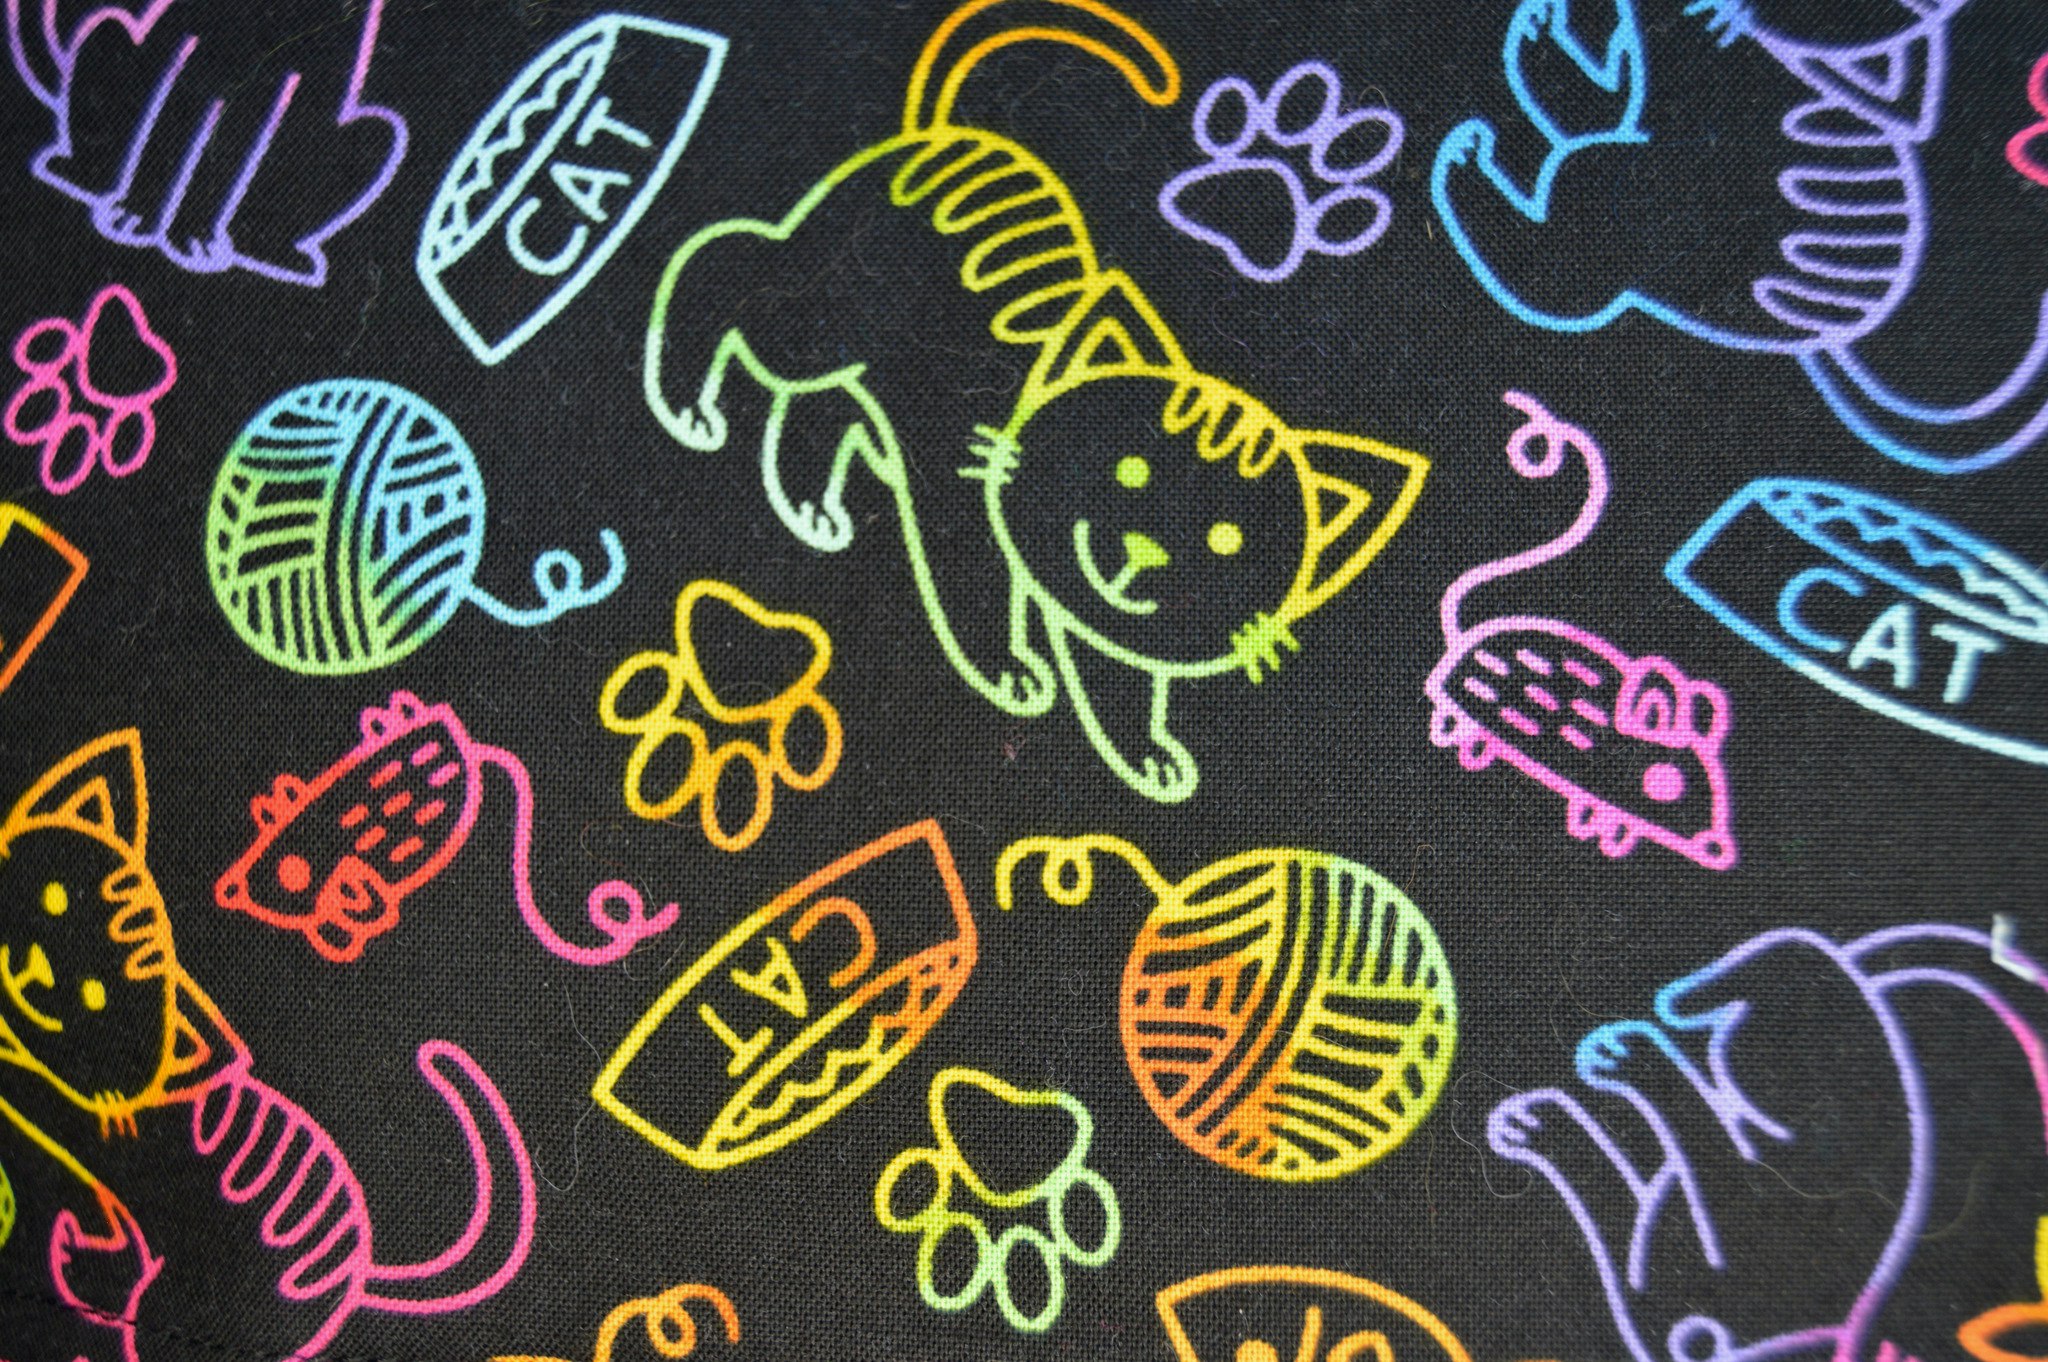 Katter i regnbågens färger på svart botten